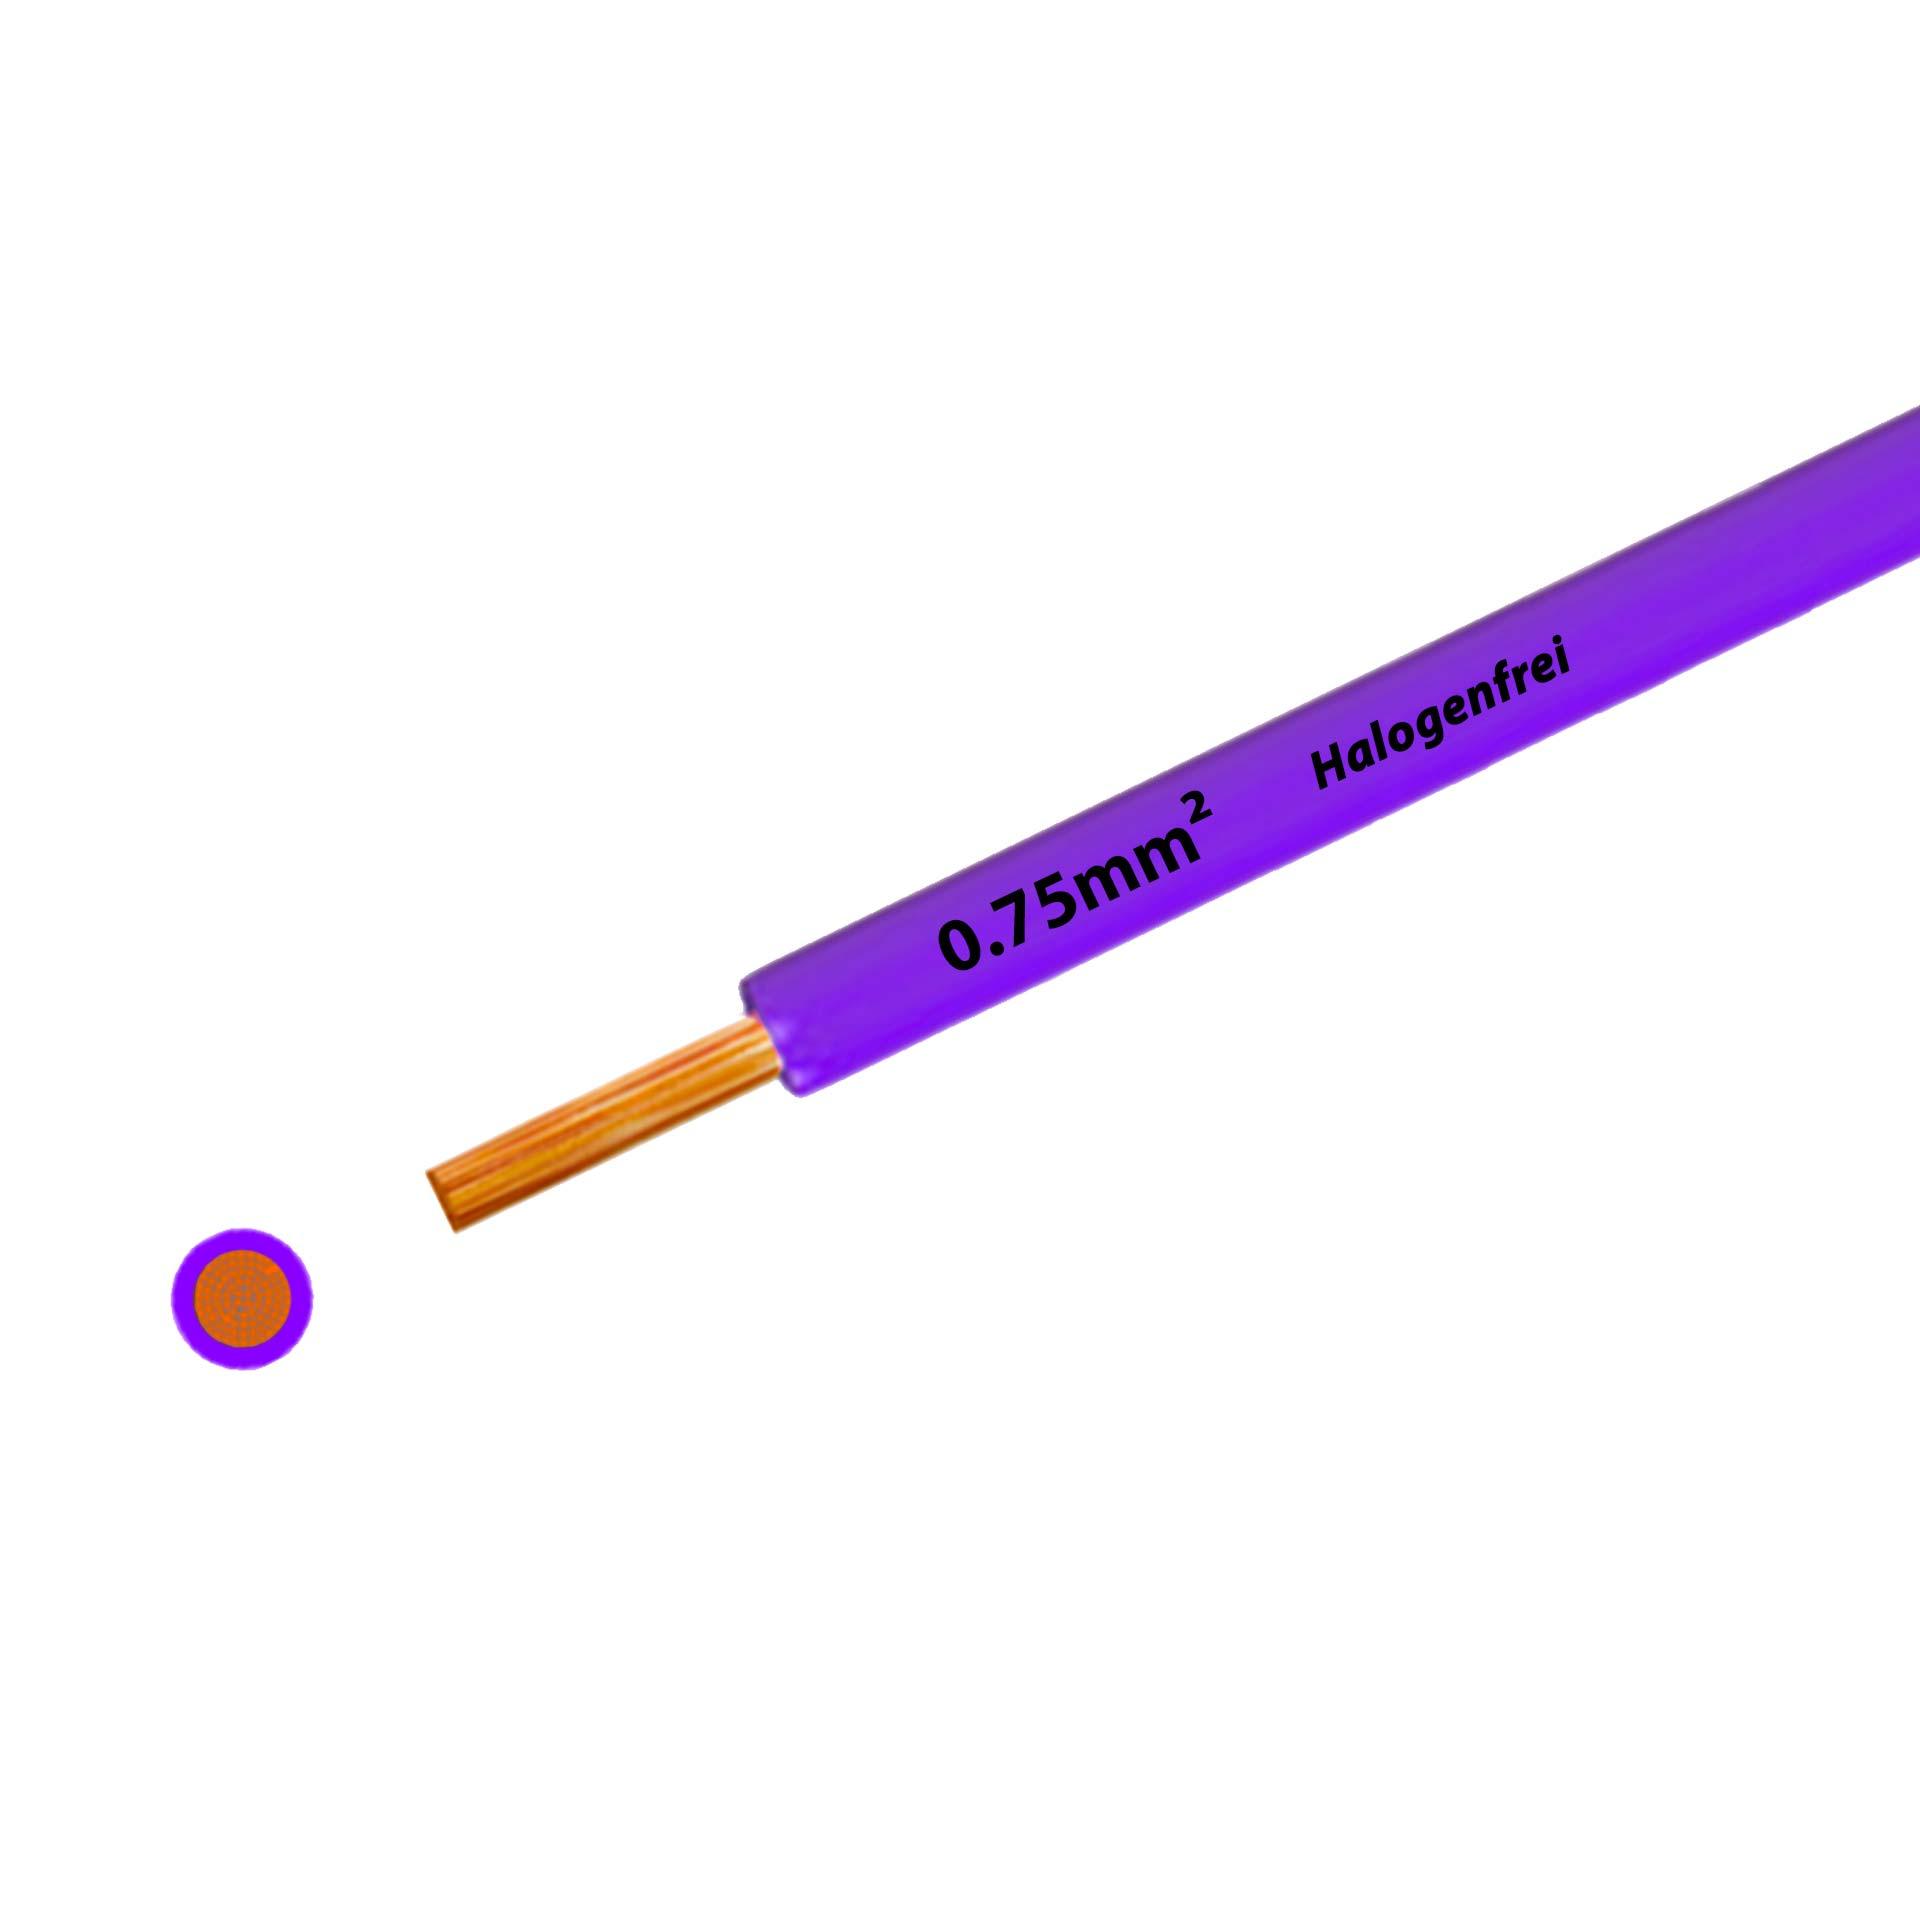 Litze halogenfrei 90° C , 500V, 0.75mm2, violett (RAL 4005), auf Kunststoffrolle